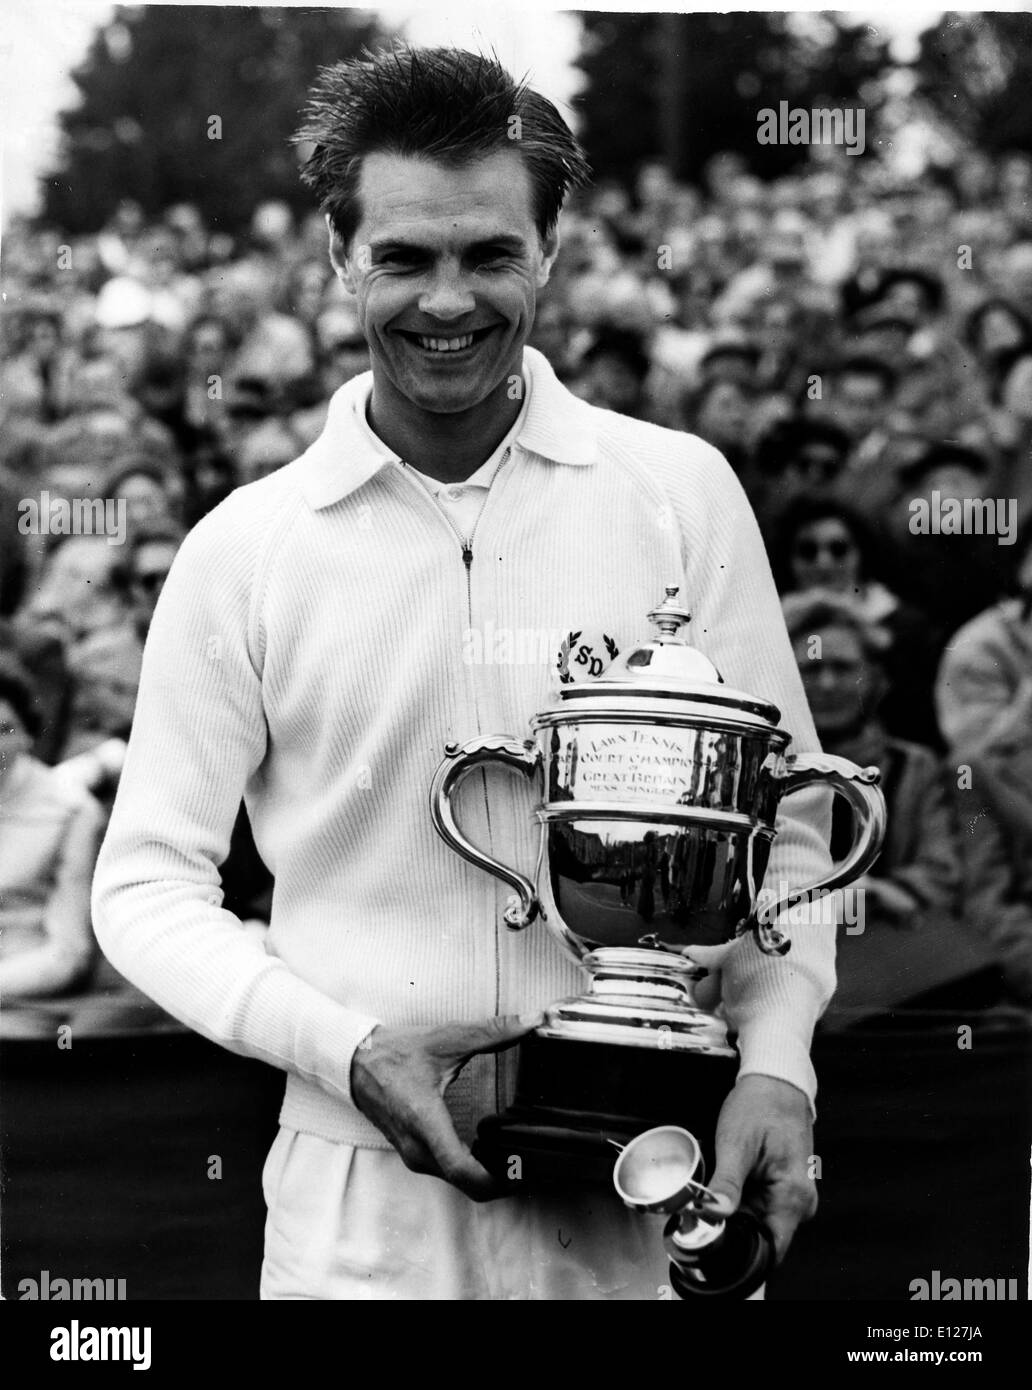 Apr 01, 2009 - Londres, Angleterre, Royaume-Uni - SVEN DAVIDSON (13 juillet 1928 - 28 mai 2008) était un joueur de tennis suédois. En 1957, il a été le premier Suédois à remporter des championnats de France (qui est devenu l'Open de France) avec une victoire sur Herbie Flam dans la finale. En 1955, il a été finaliste à Tony Trabert, et dans le tournoi 1956 il perd à Lew Hoad. Il a gagné un total de 26 championnats suédois et a joué 86 matchs pour l'équipe de Coupe Davis. (Crédit Image : KEYSTONE/ZUMAPRESS.com) Photos USA Banque D'Images